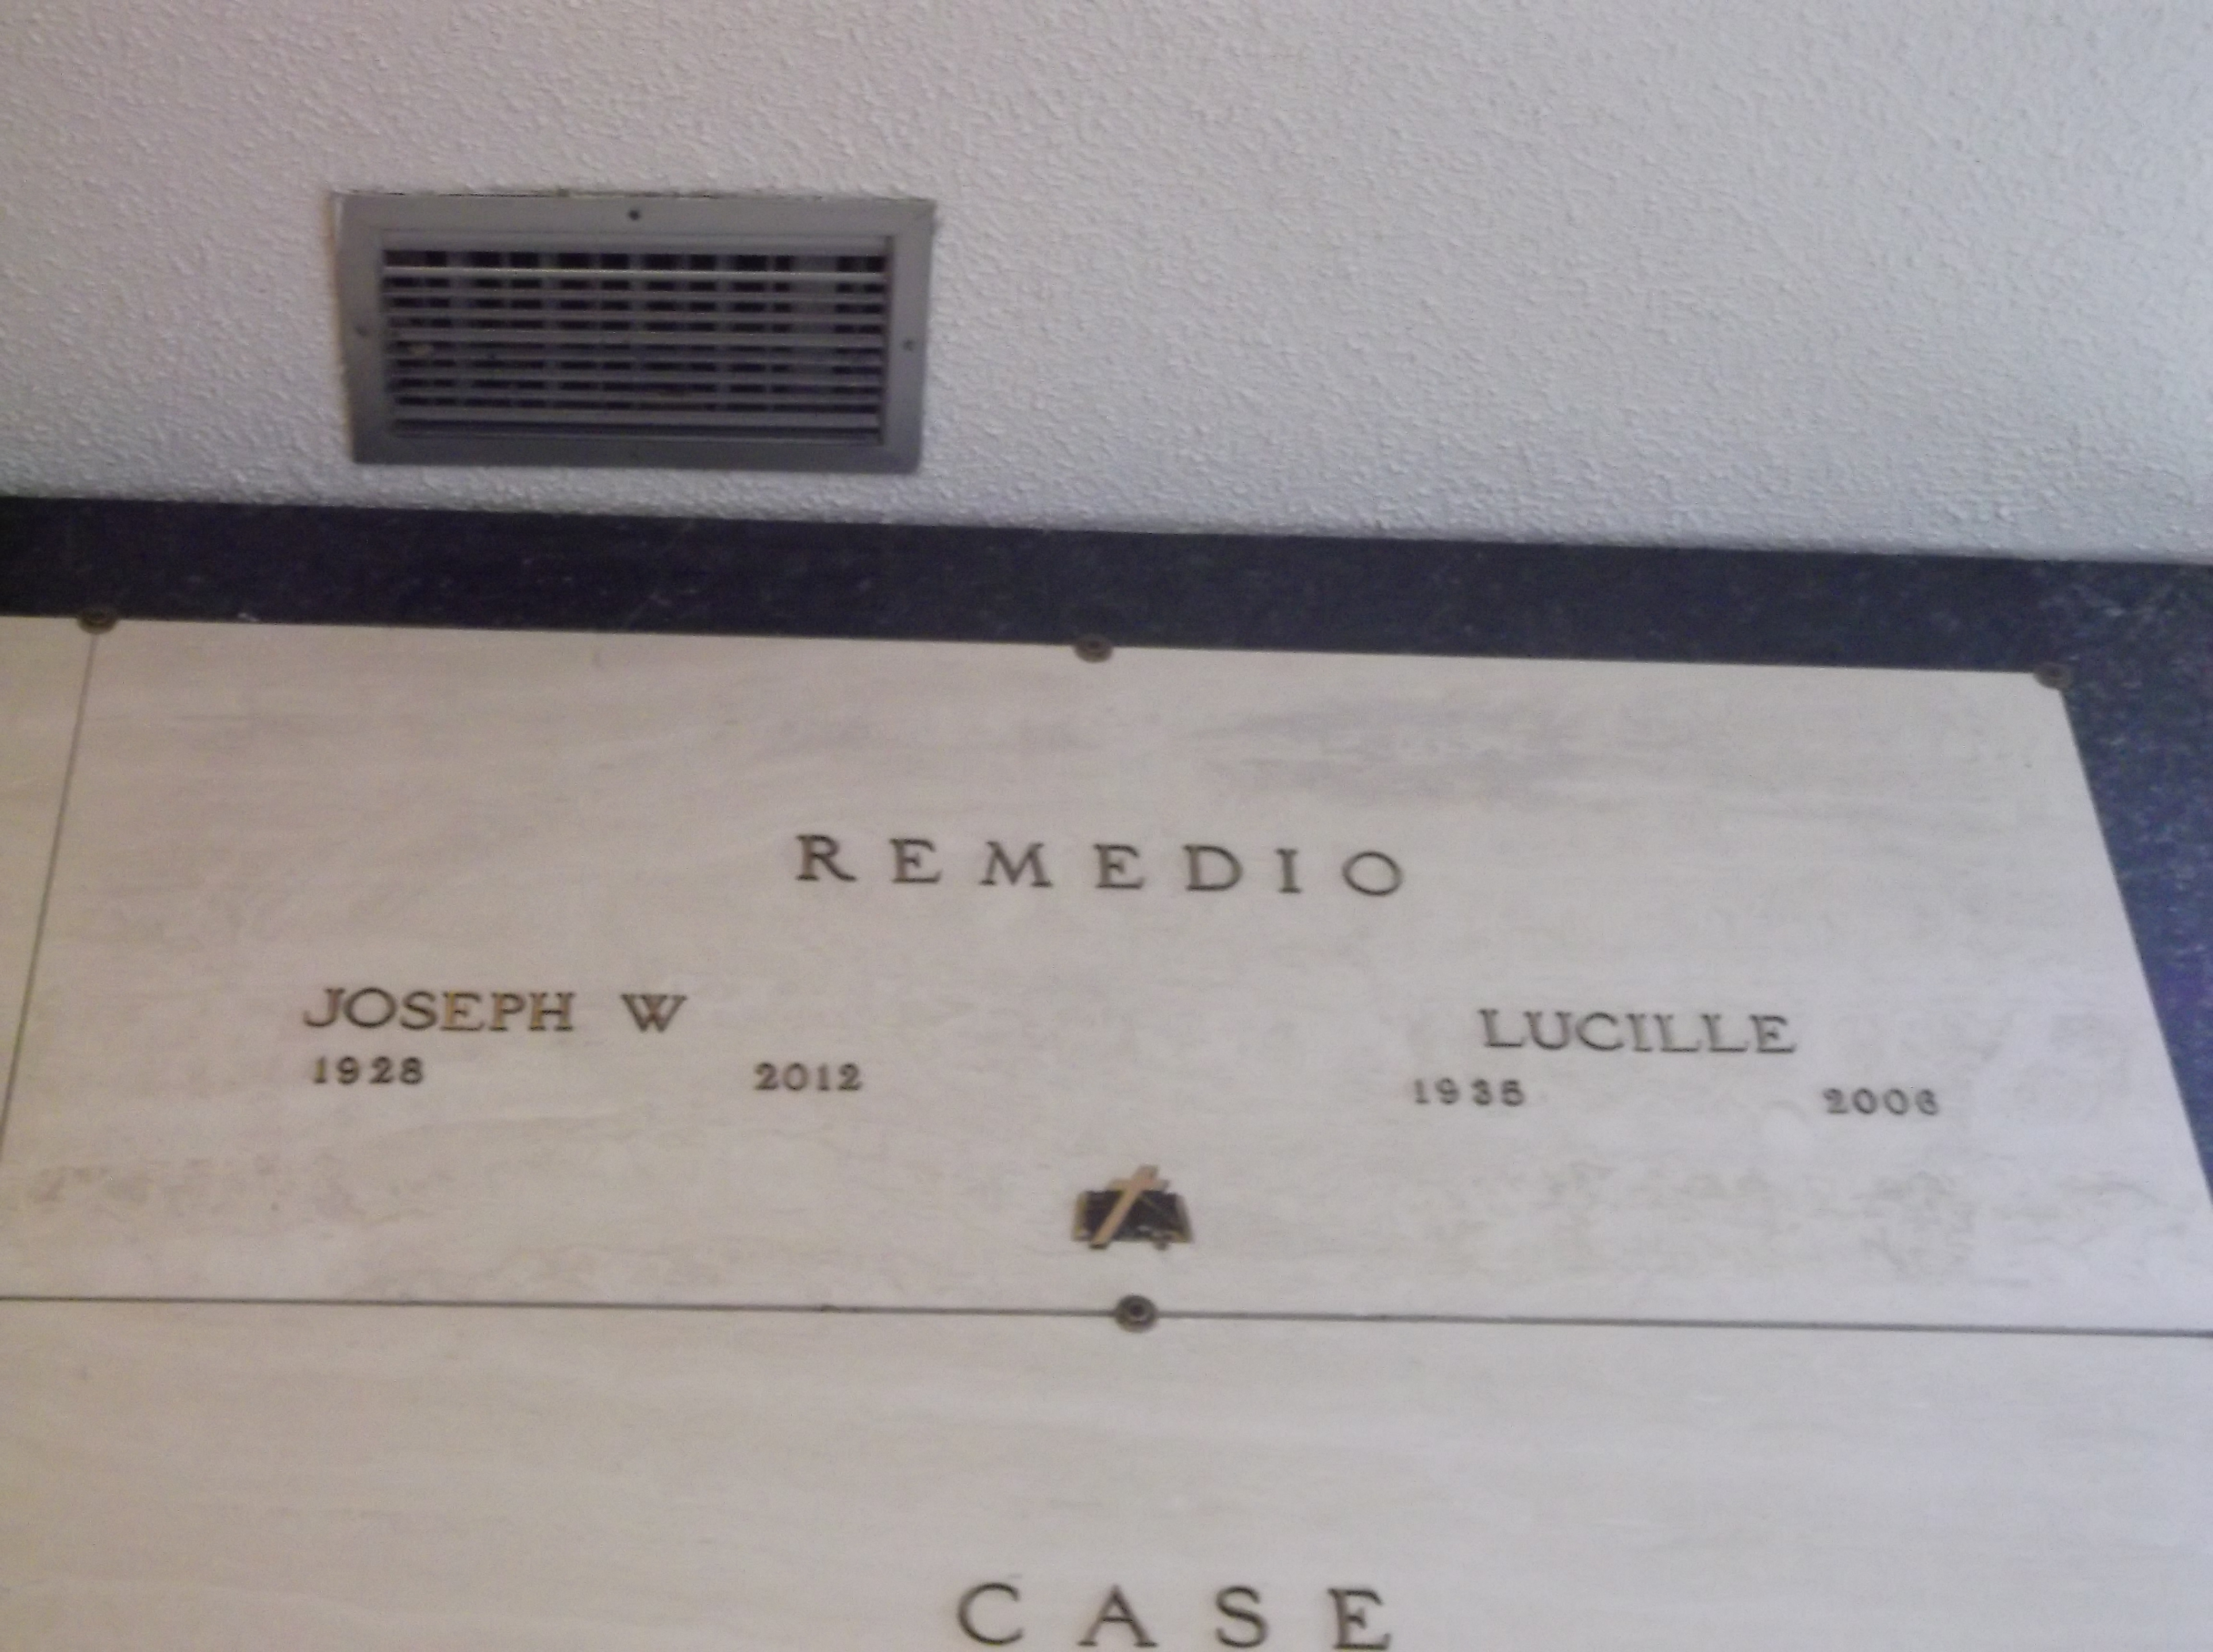 Joseph W Remedio